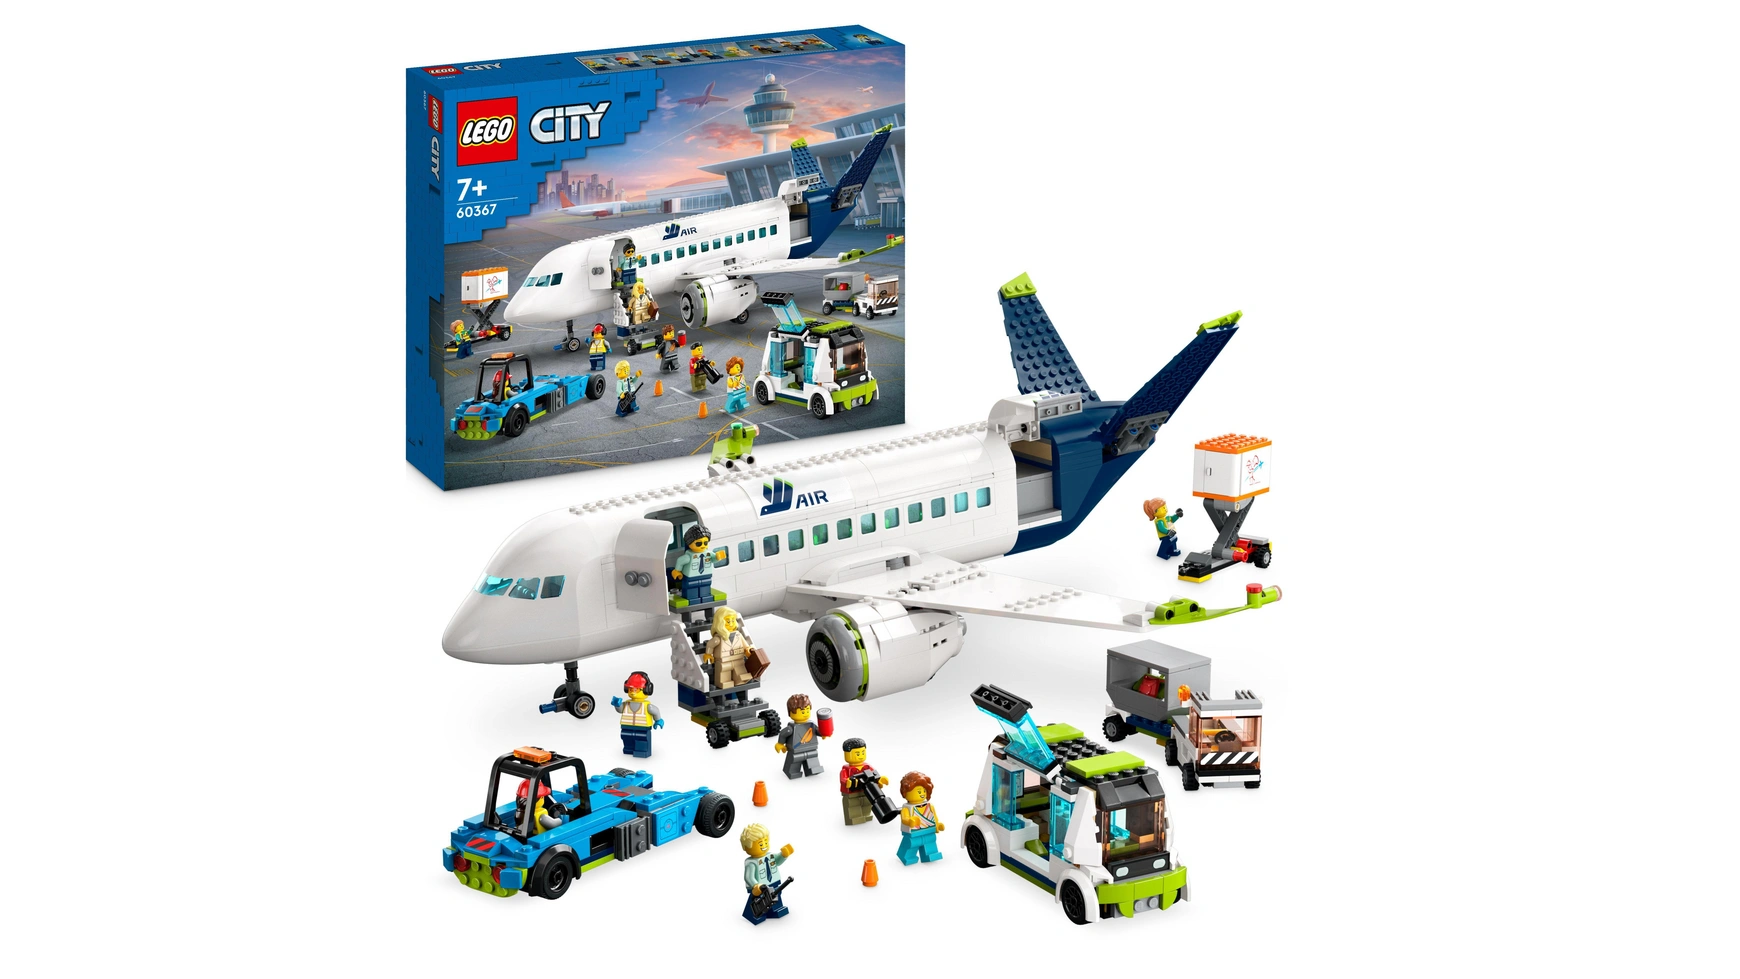 Lego City Набор пассажирских самолетов, большая модель самолета с транспортными средствами фотографии